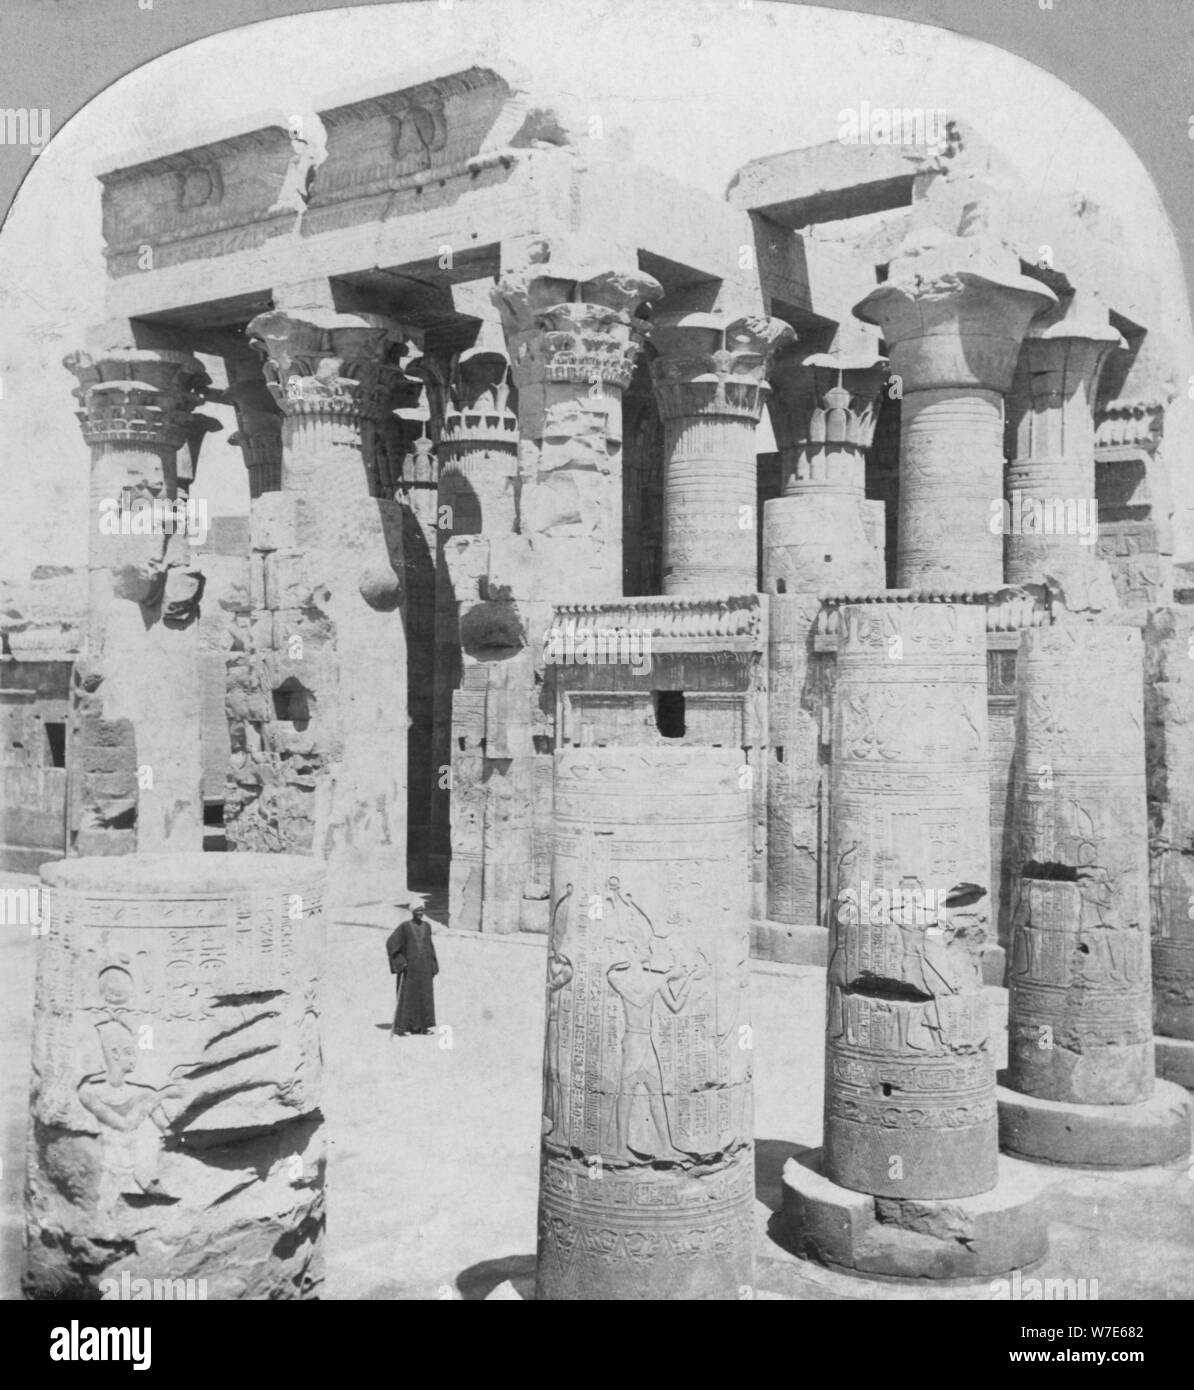 Tempio di Kom Ombo, Egitto, c1899. Artista: la raffinata arte fotografi Co Foto Stock